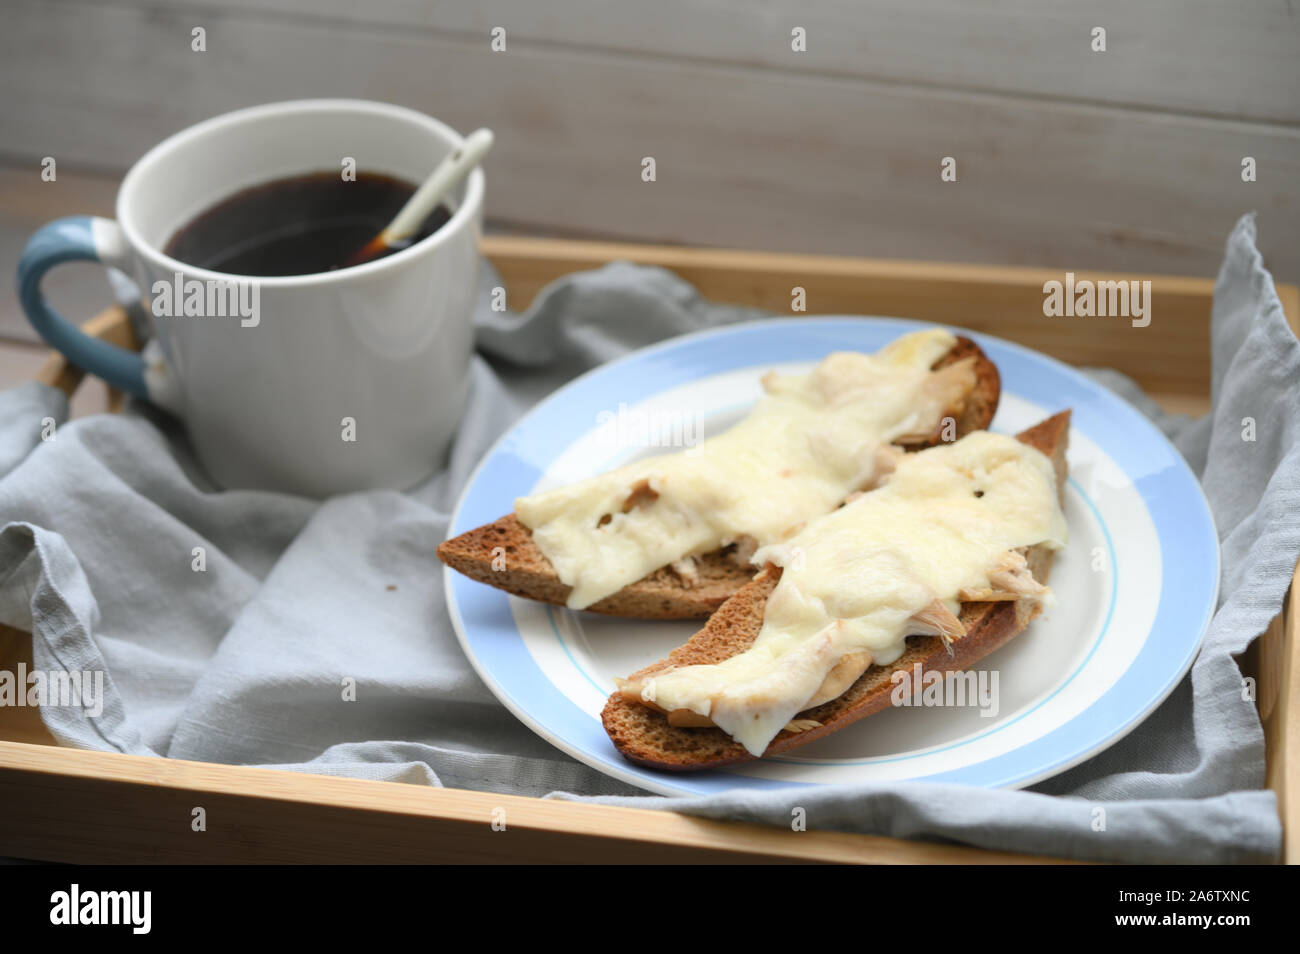 Petit-déjeuner rustique : deux sandwichs baguette chaude avec de la viande de poulet et fromage et une tasse de café noir sur un plateau en bois Banque D'Images